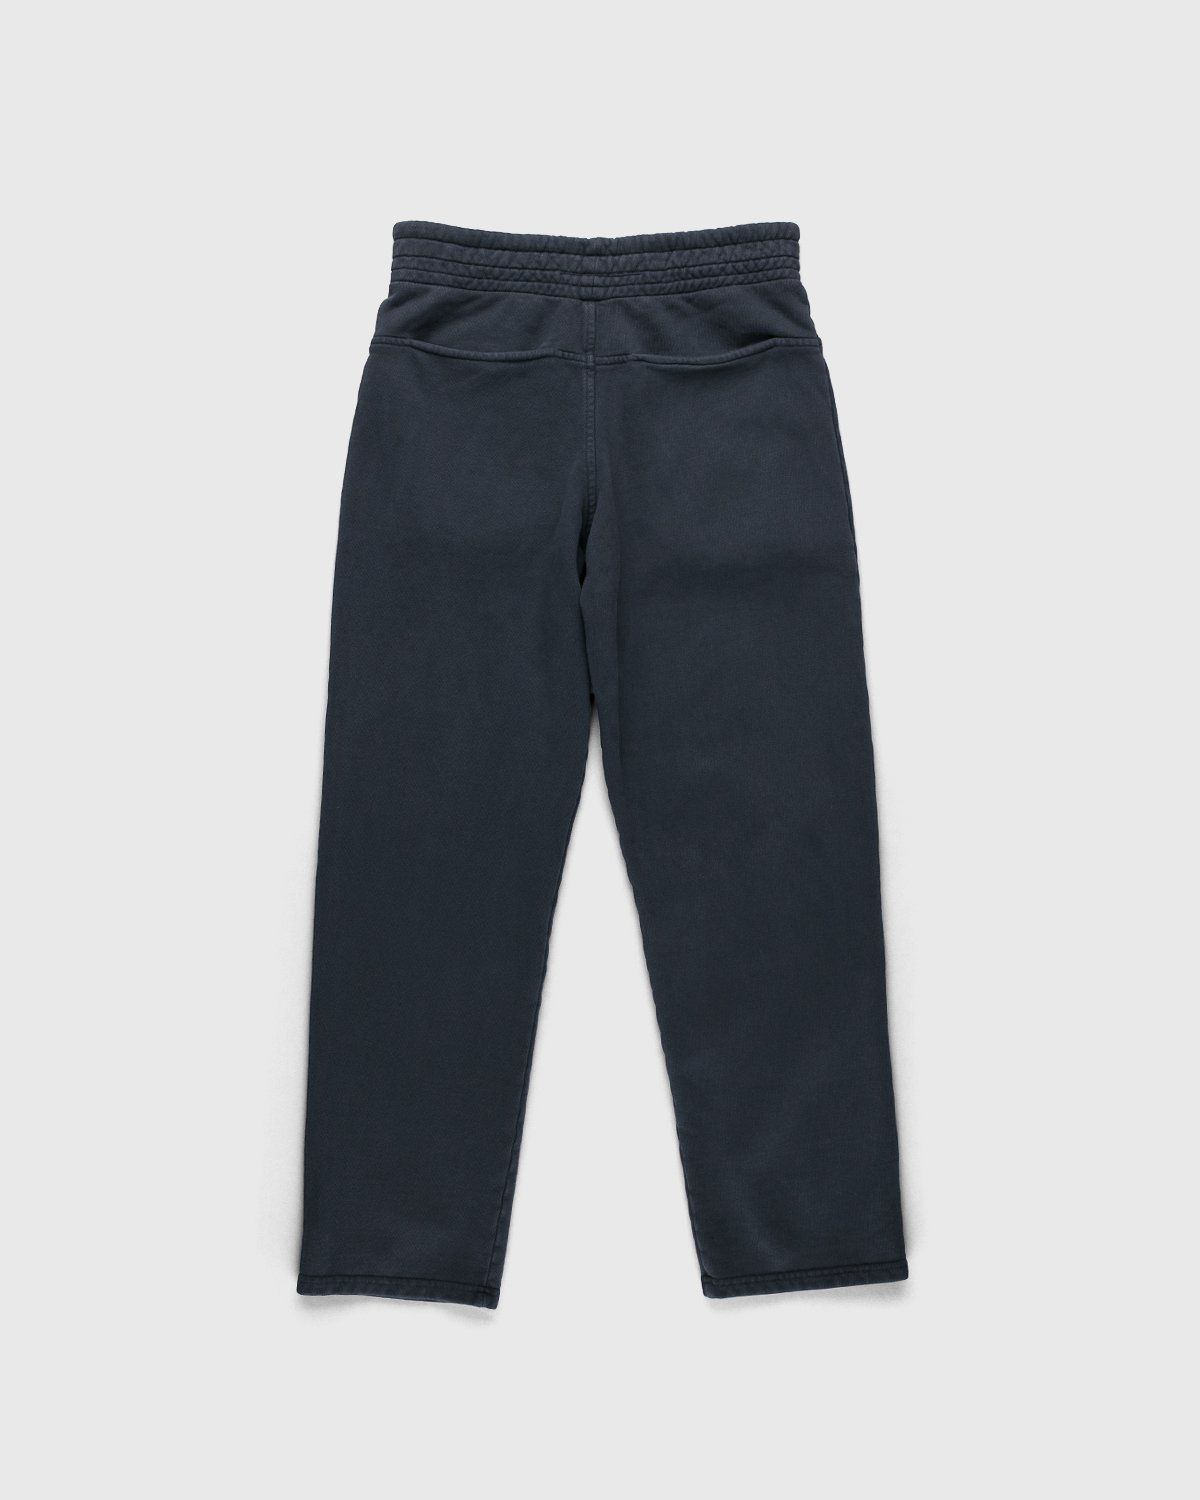 Darryl Brown – Gym Pants Vintage Black - Sweatpants - Black - Image 2